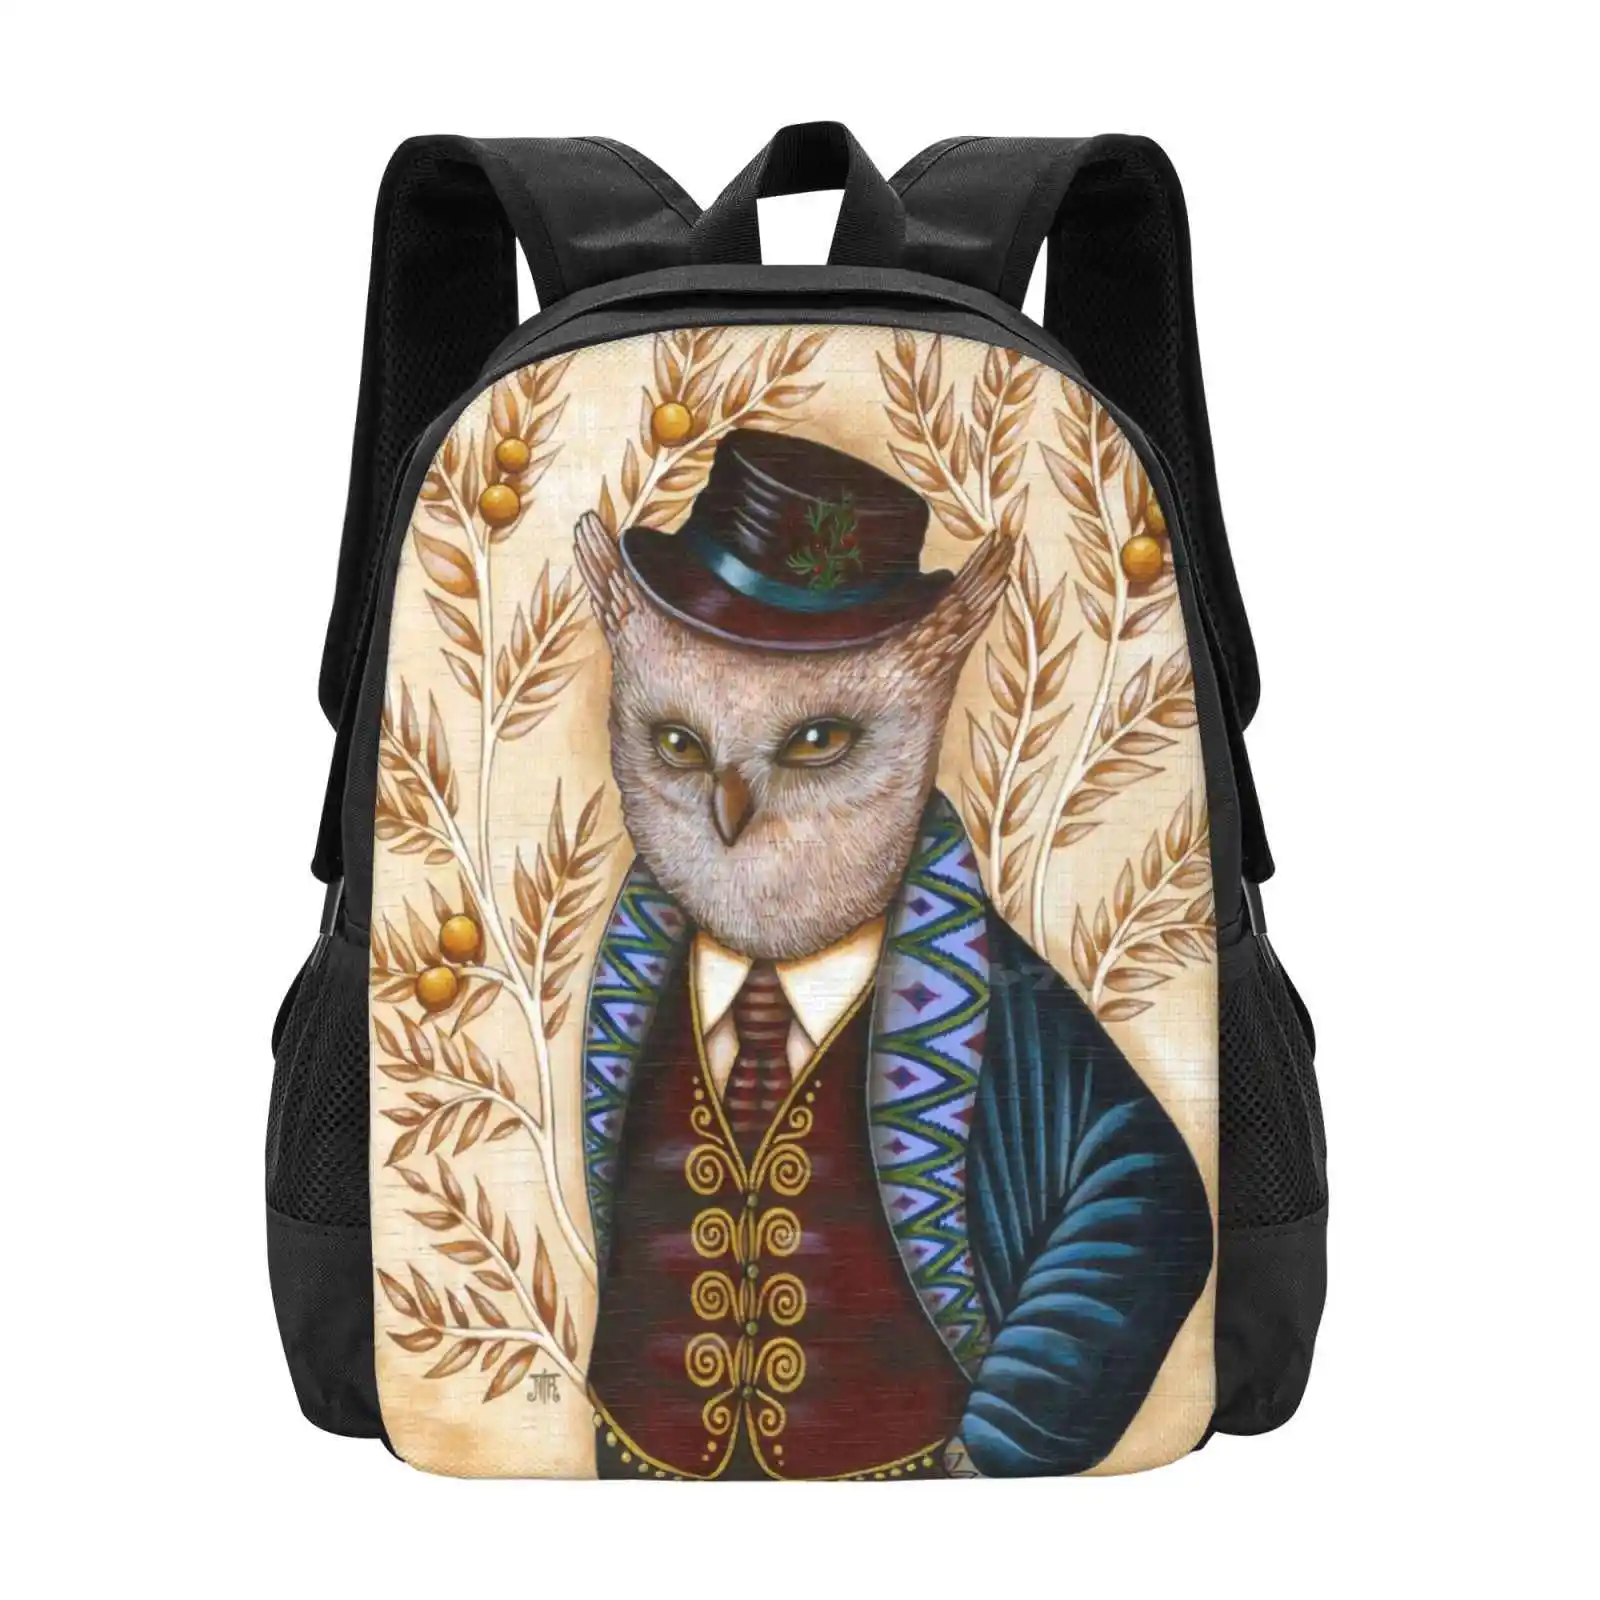 Дизайнерская сумка Wind King Pattern, Студенческий рюкзак, Фантазийная шляпа, Волшебная Сова, Денди